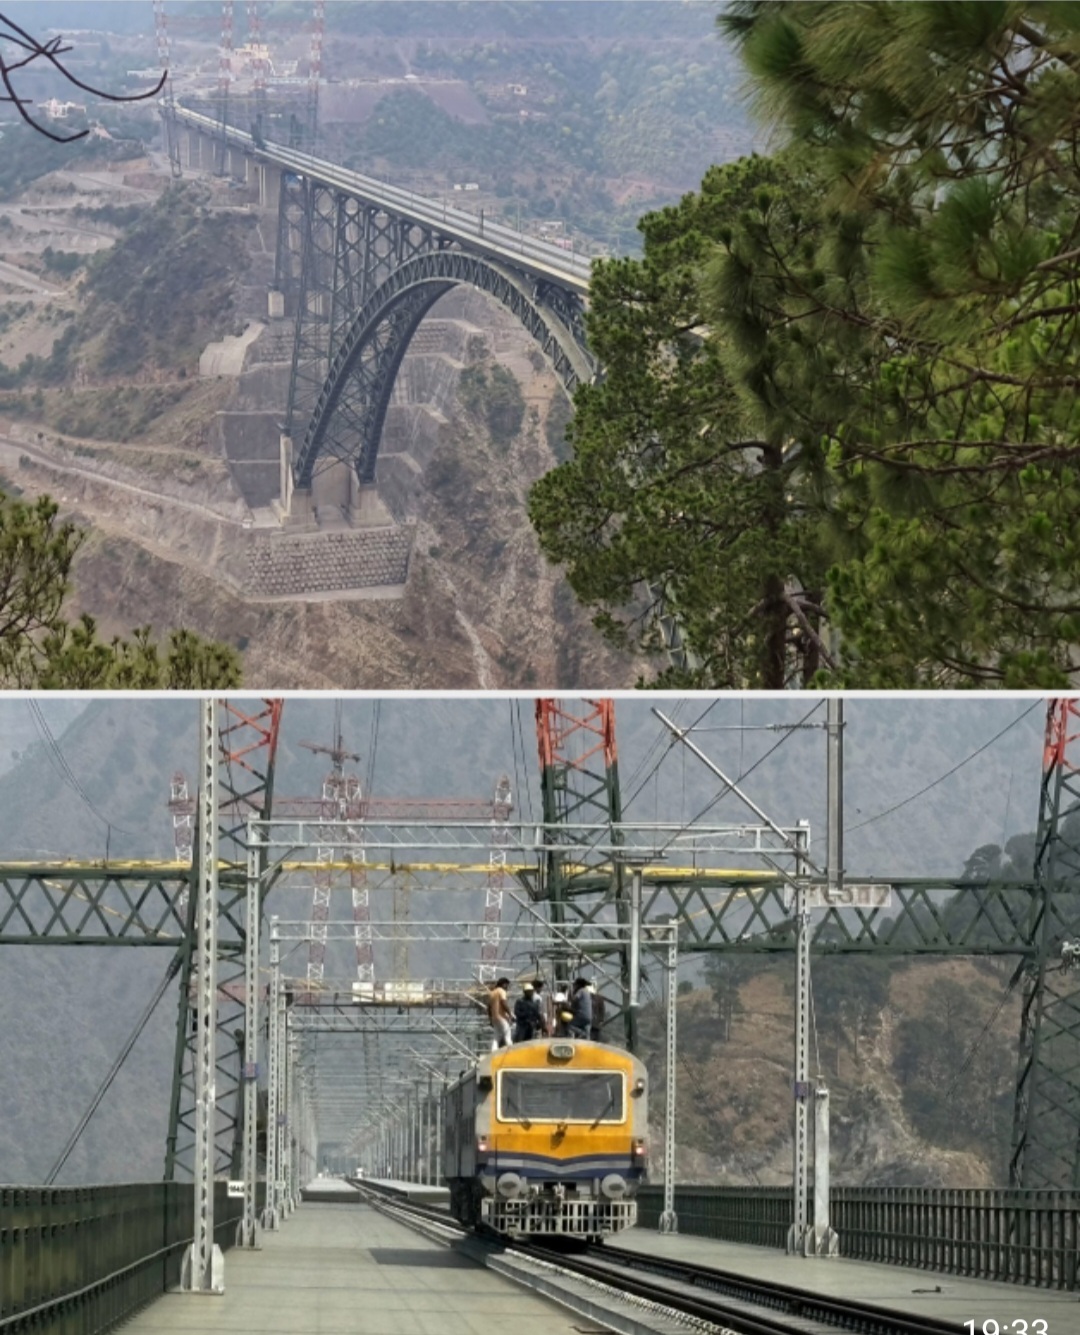 दुनिया के सबसे ऊंचे पुल चिनाब रेल ब्रिज पर भारत ने उतार दी ट्रेन, ट्रायल सफल